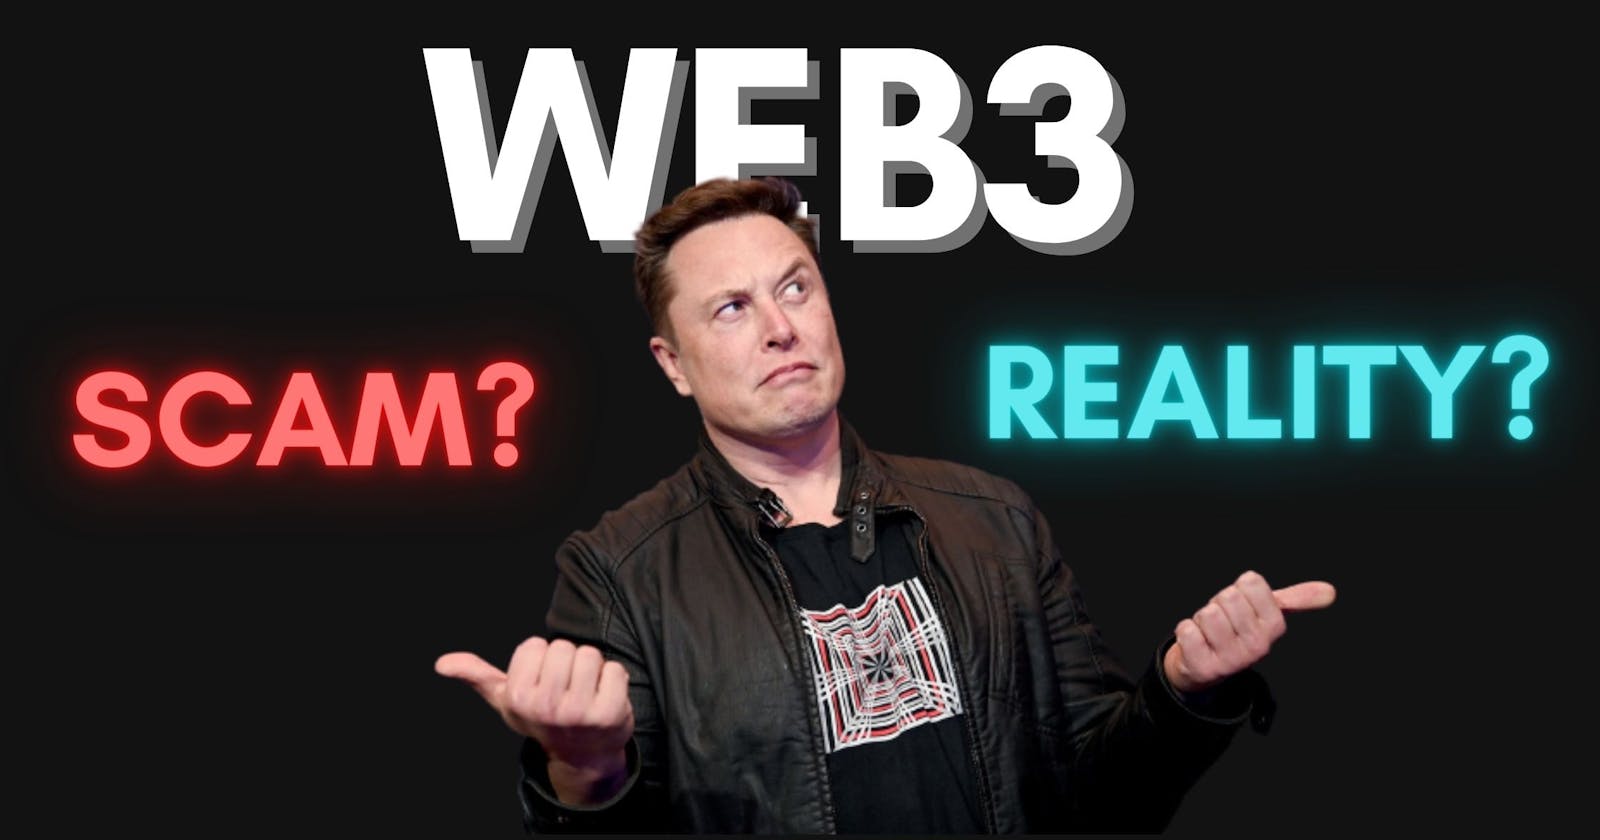 Web3.0 - Future or Scam?